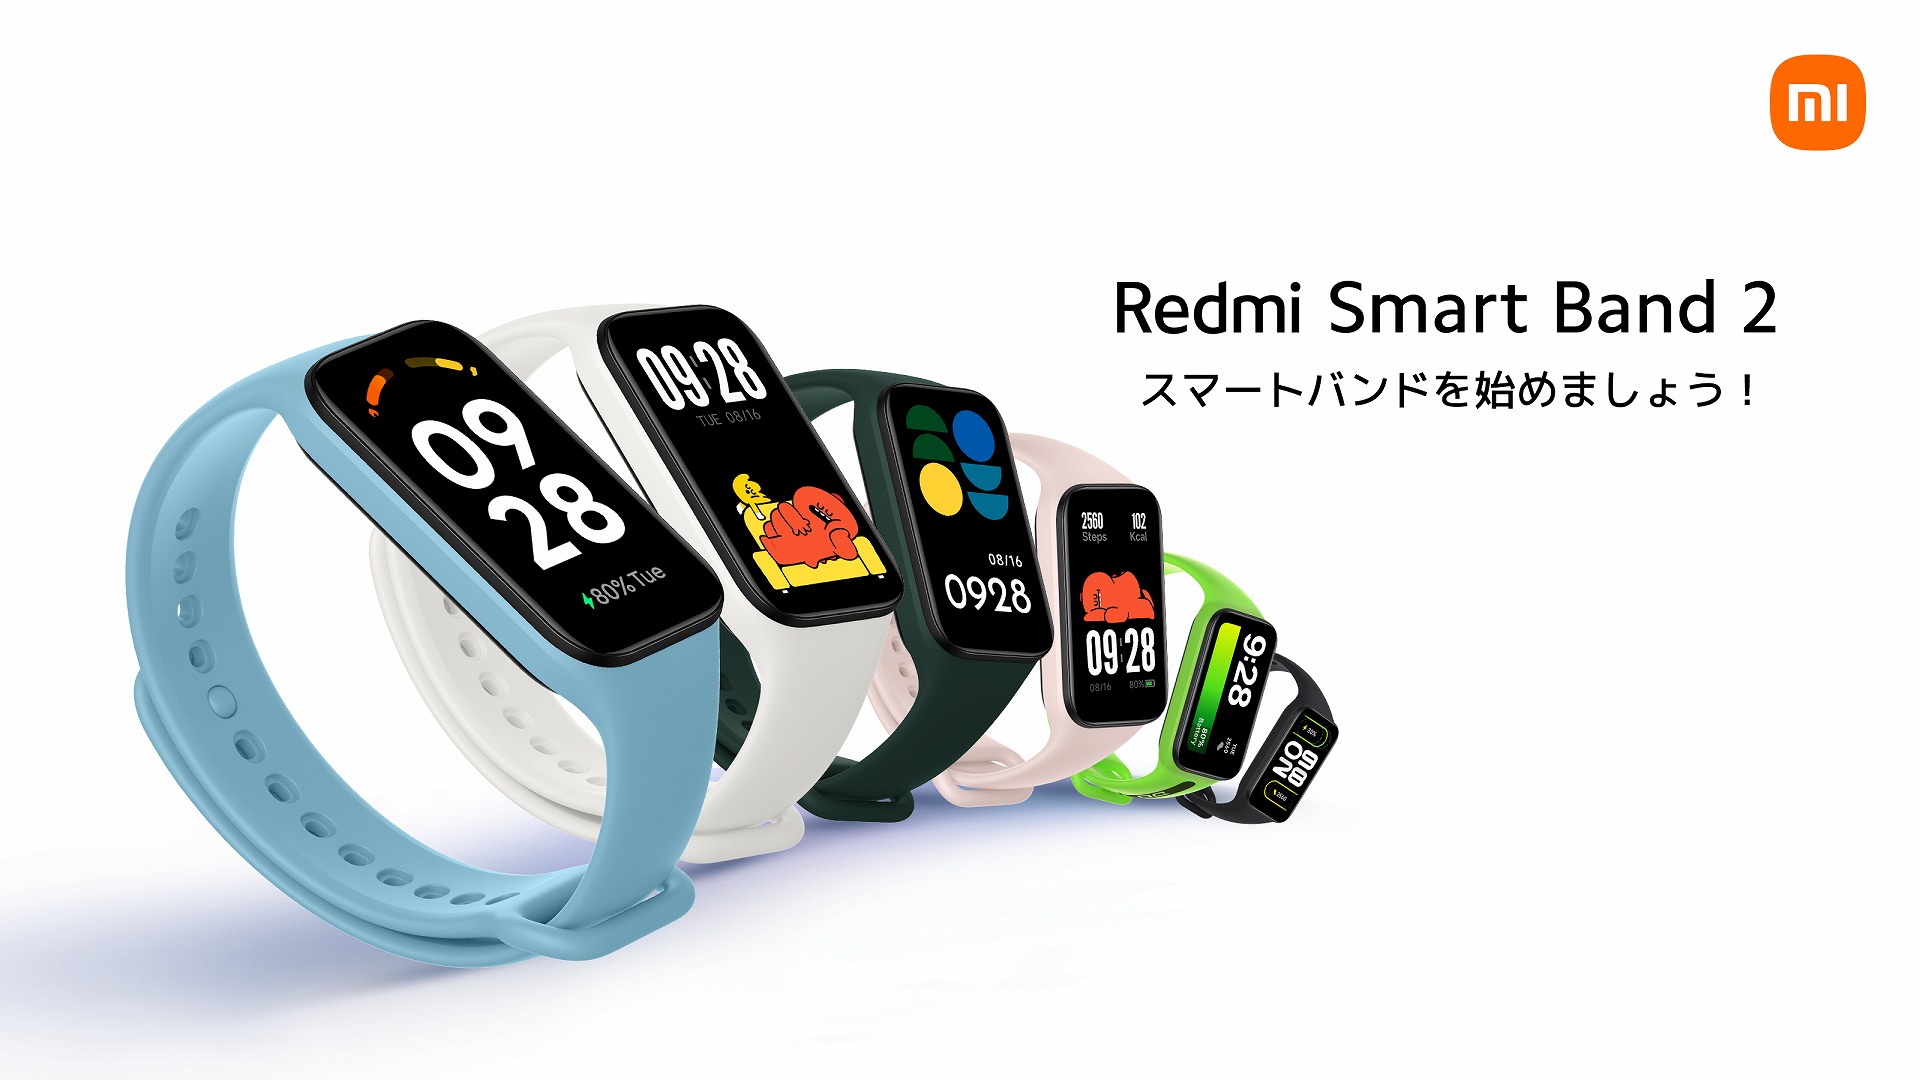 シャオミ、エントリースマートバンド「Redmi Smart Band2」を